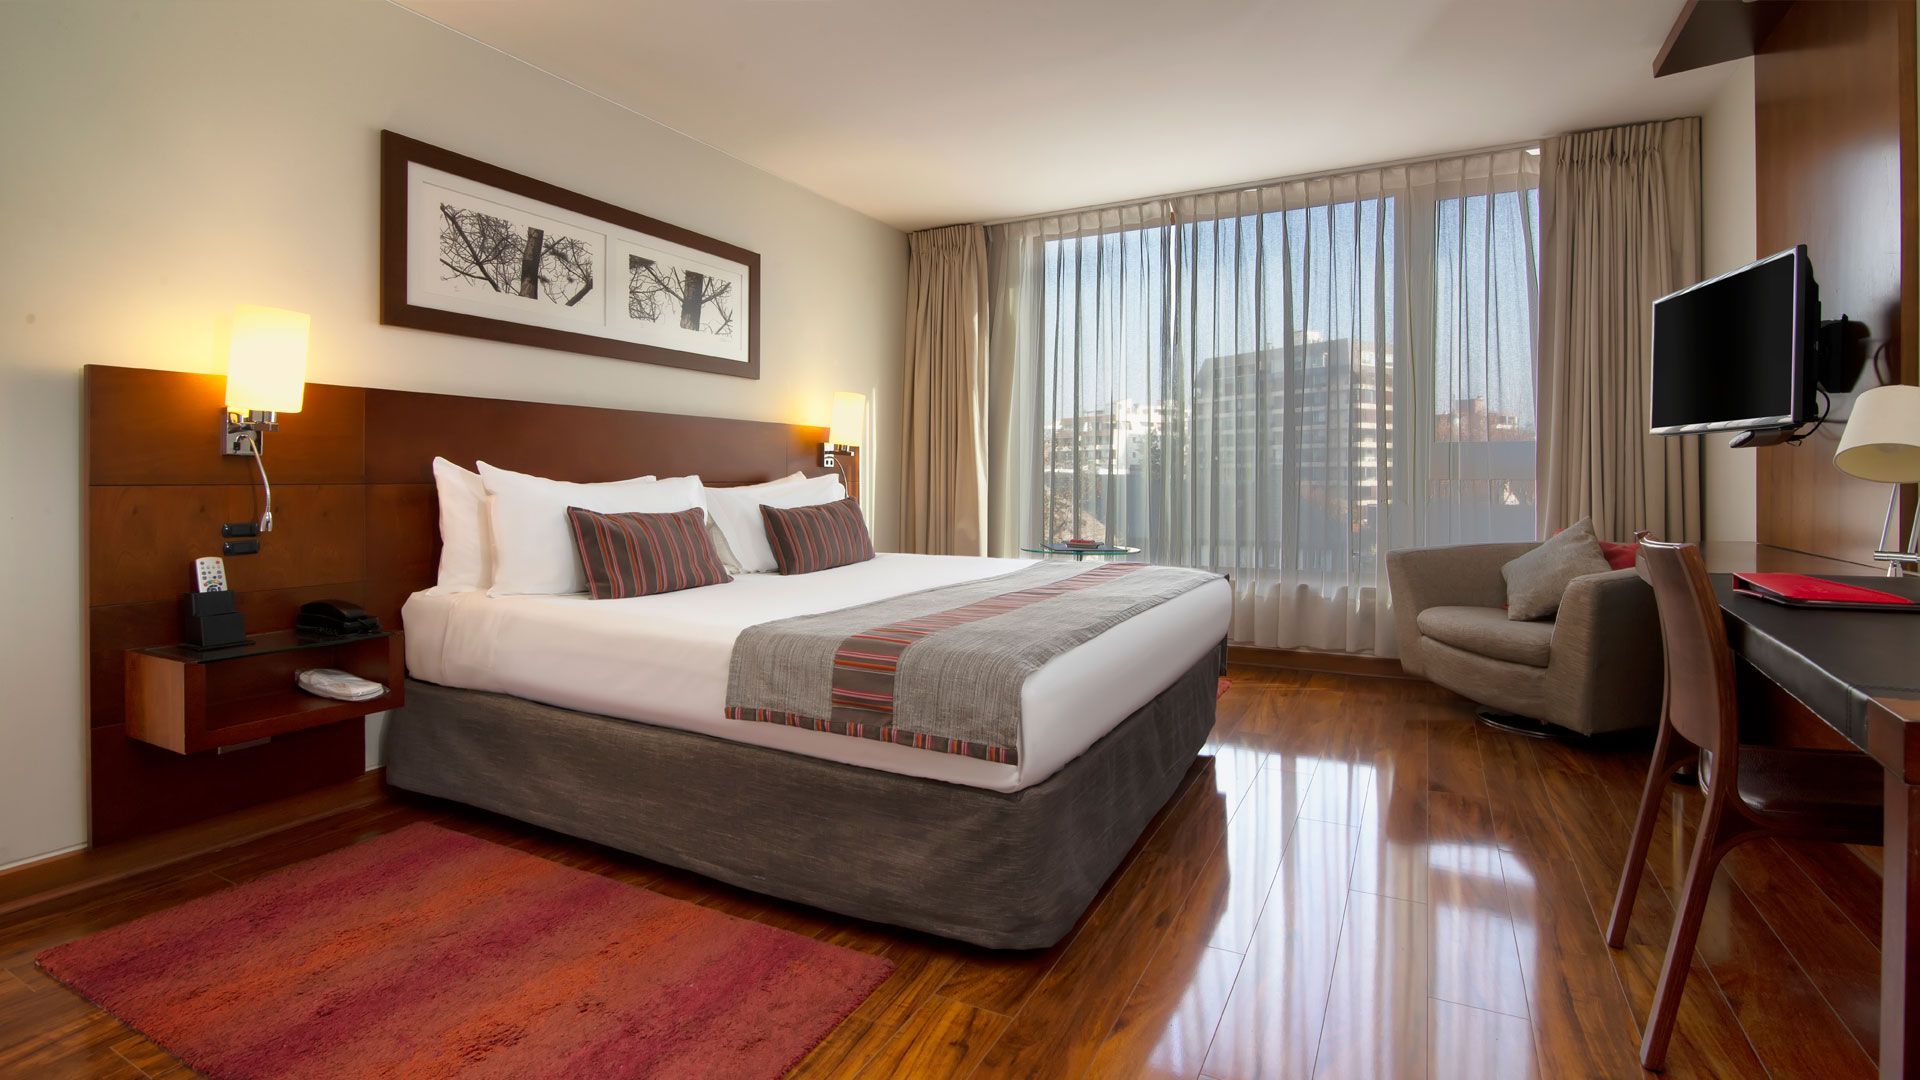 Una habitación de hotel con cama king size, silla, escritorio y televisión.